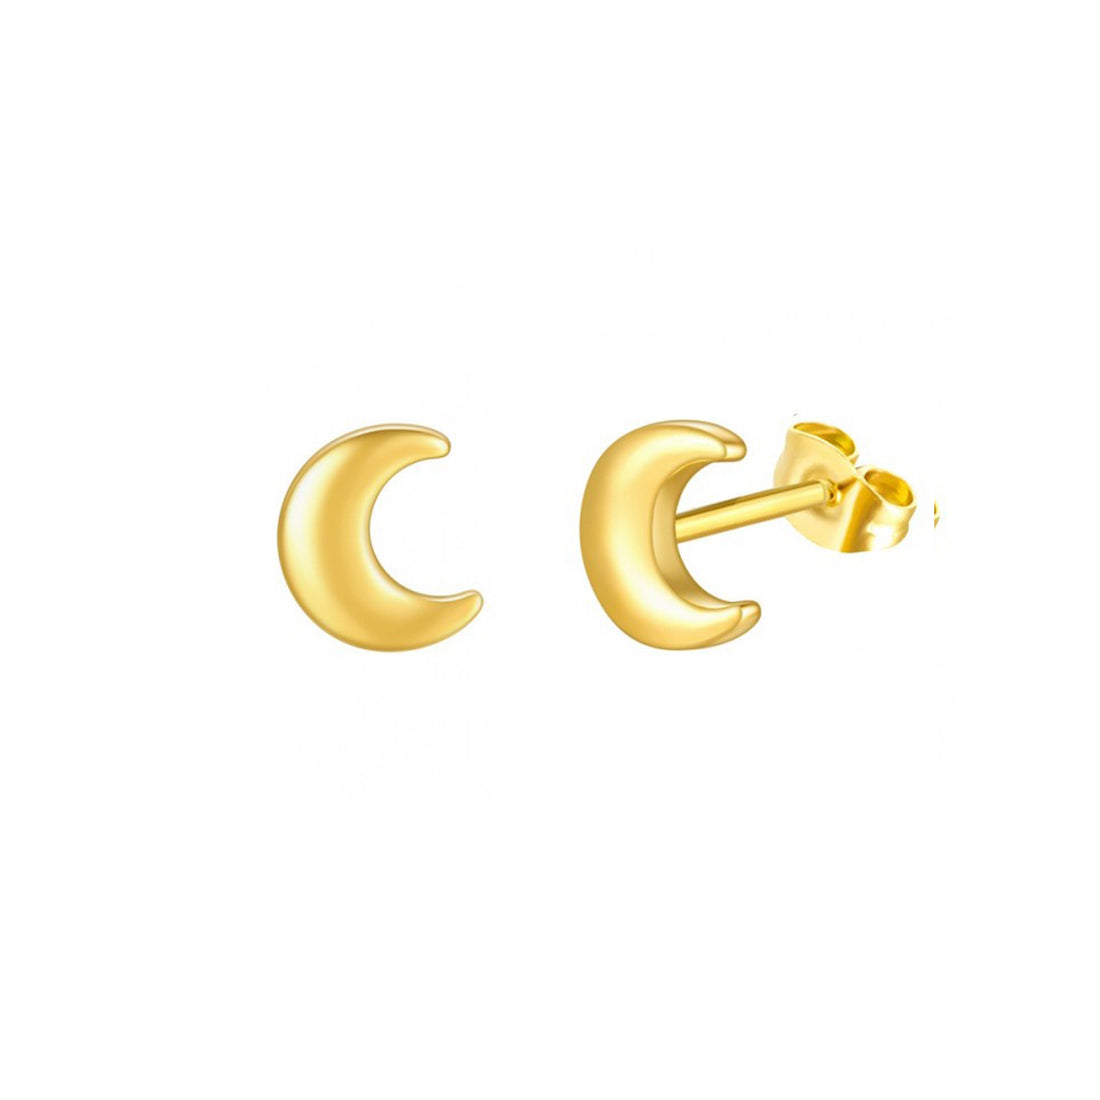 Gouden oorbel studs in de vorm van een maantje. De oorbellen zijn van roestvrij staal met een gold plated laagje en waterproof. Moon studs gold 5 mm.